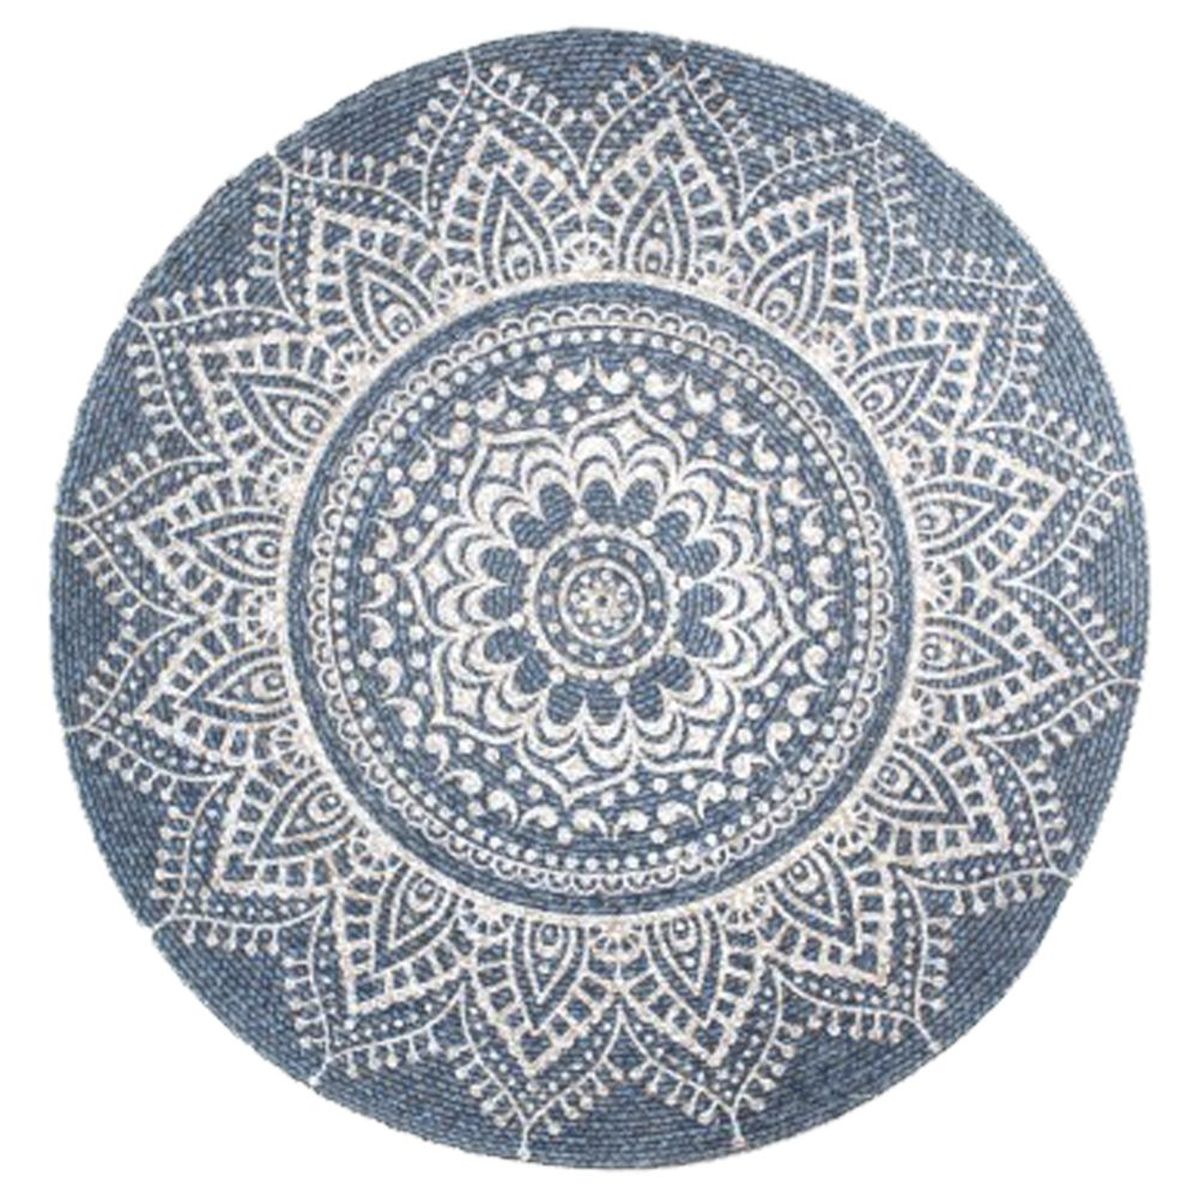 Tapis rond Mandala Ethnique en Jute et Coton 90 cm - Gris Bleu